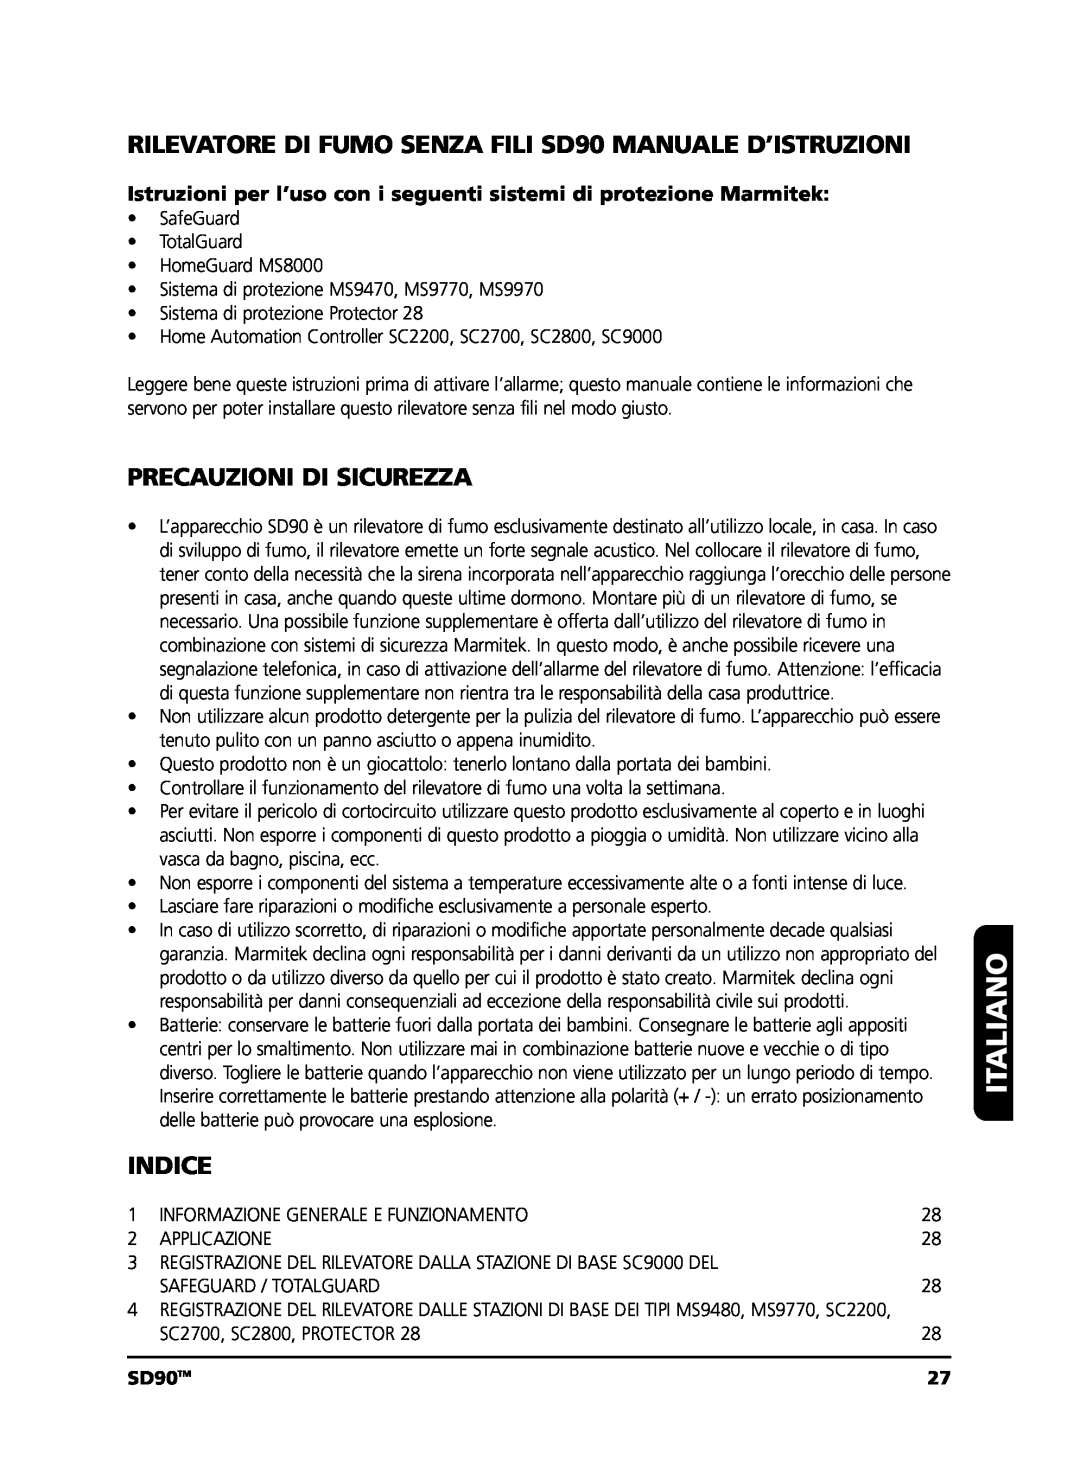 Marmitek user manual Italiano, Precauzioni Di Sicurezza, Indice, SD90TM 